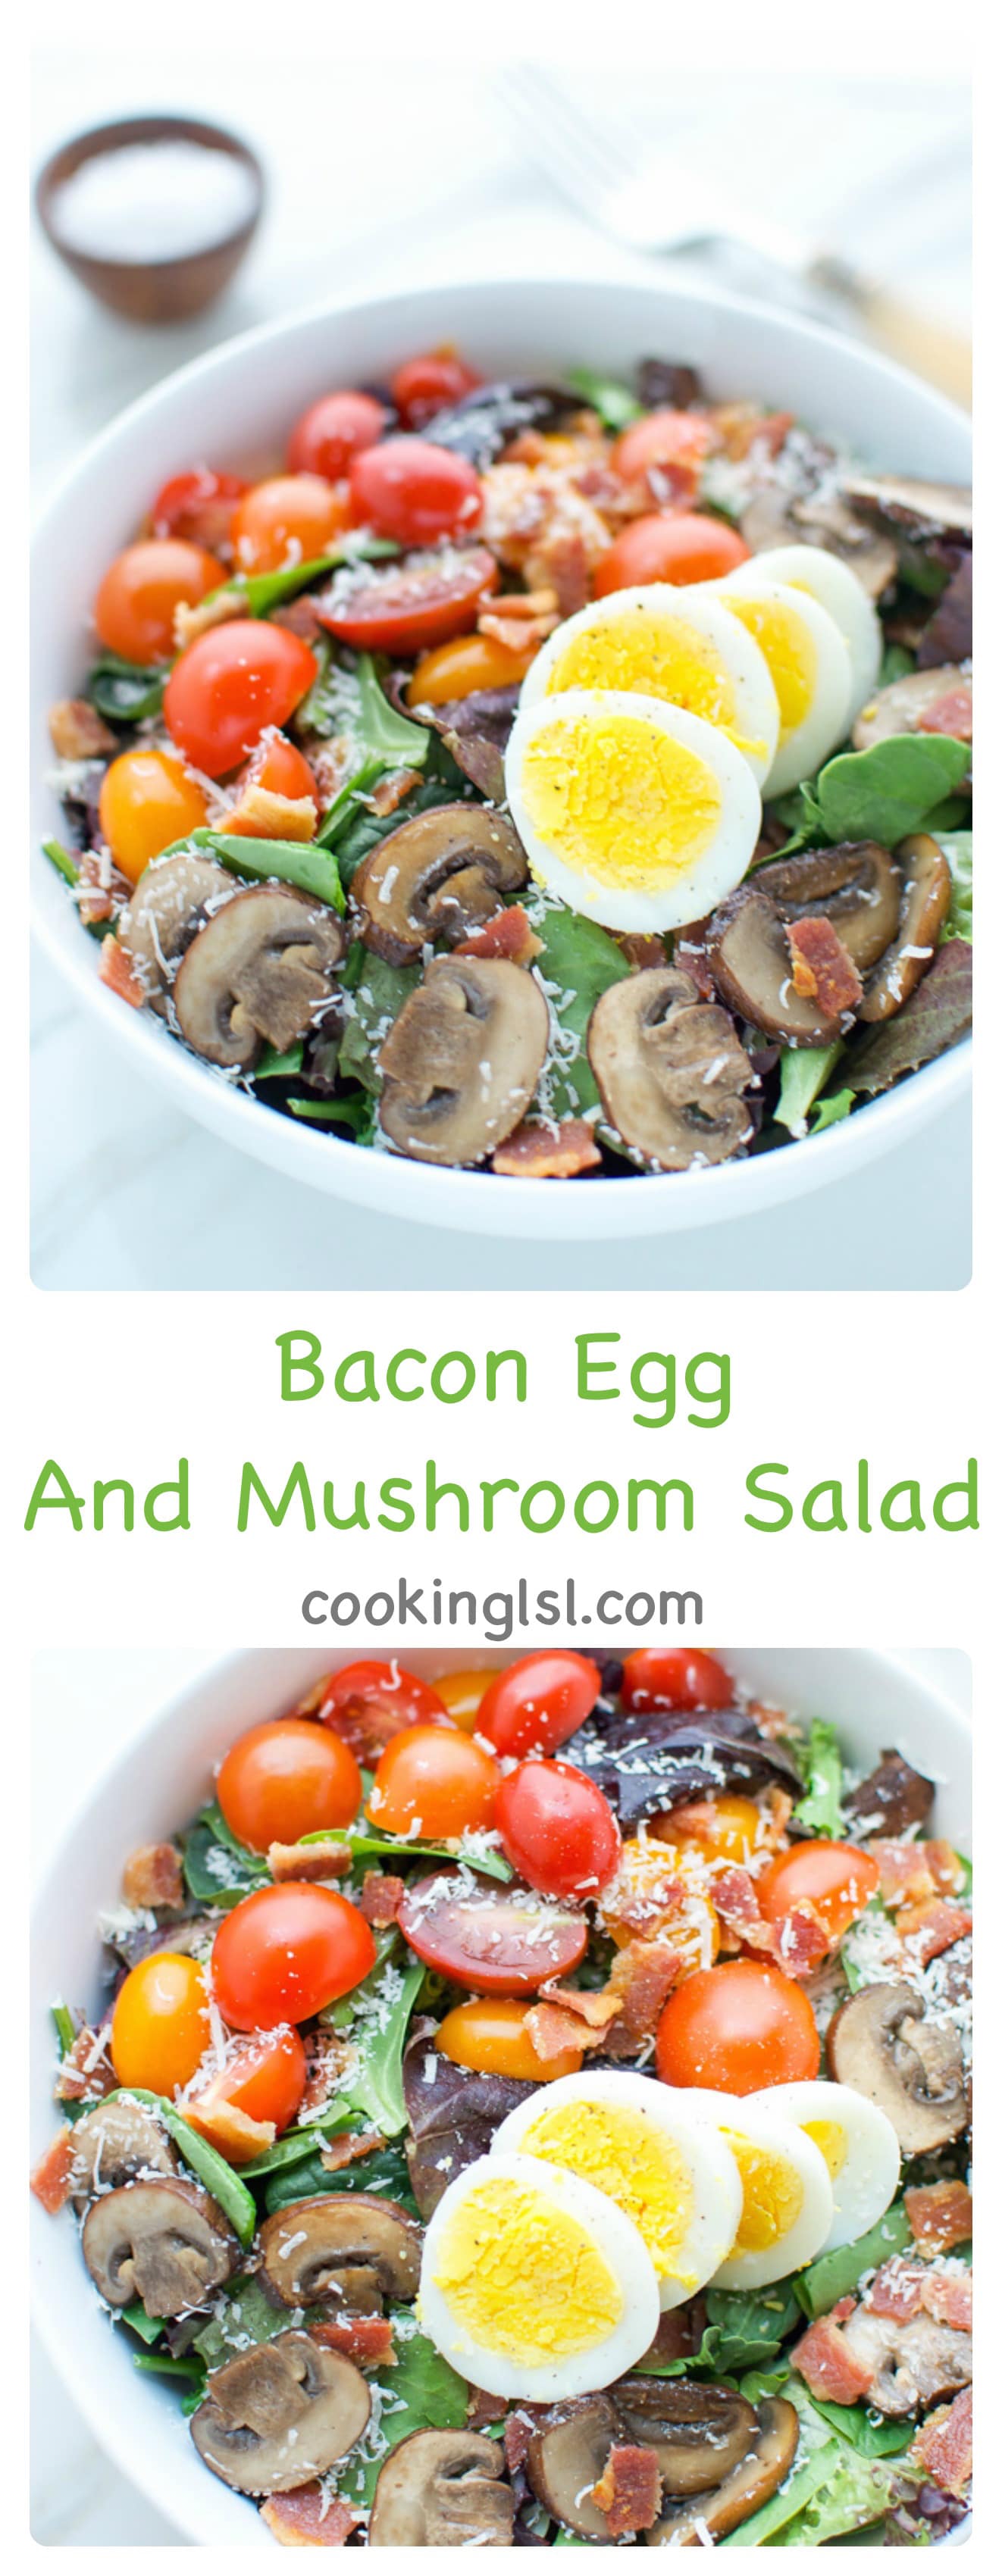 Bacon-Egg-And-Mushroom-Salad